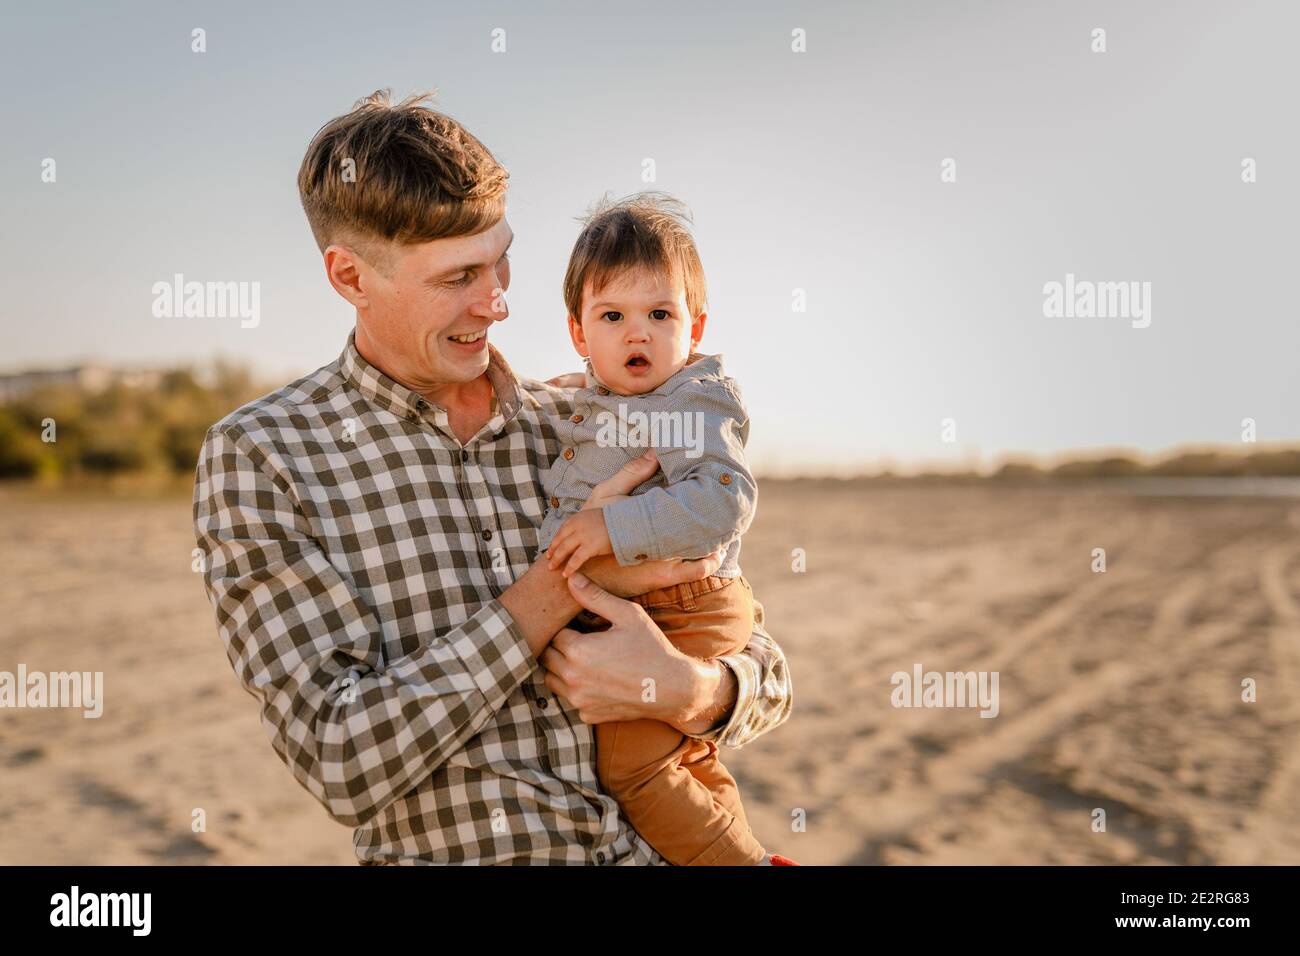 Porträt des liebenden Vaters und seines einjährigen Sohnes, der im Freien läuft und spielt. Stockfoto